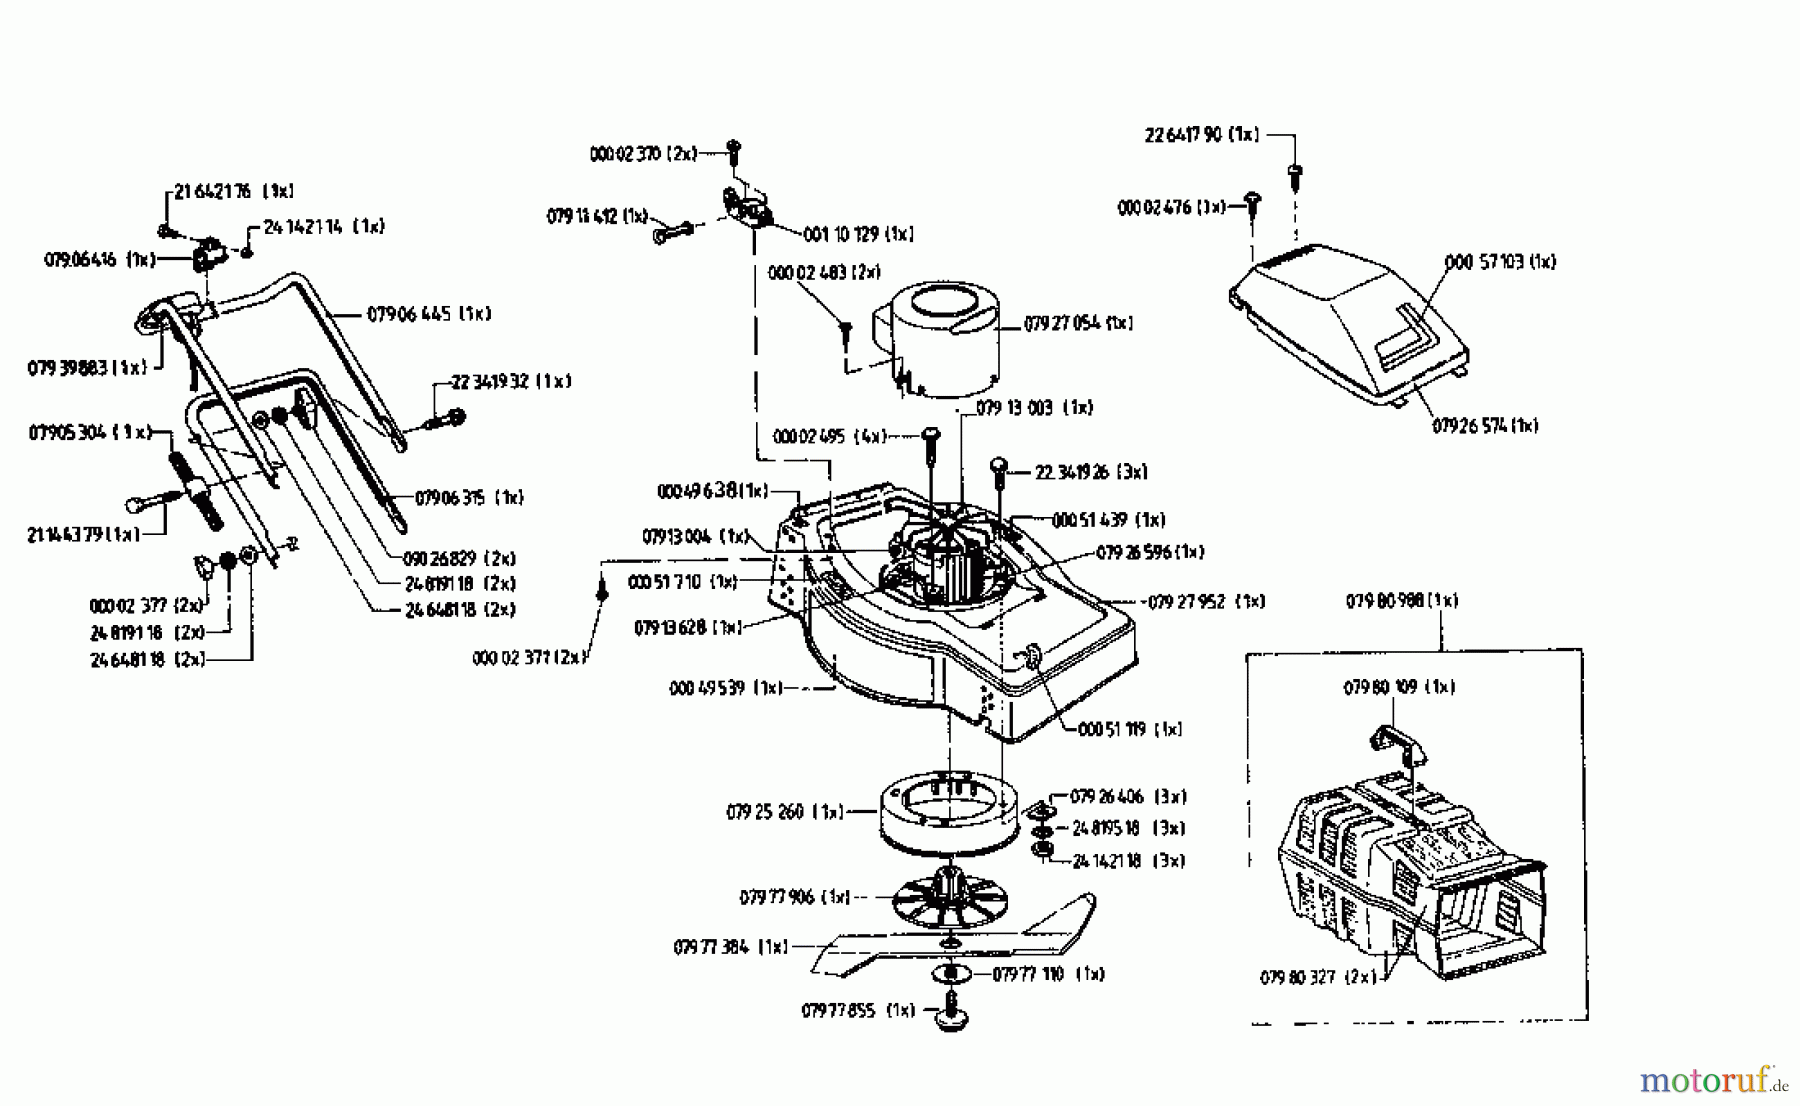  Golf Tondeuse électrique 445 HLES 04032.01  (1996) Machine de base